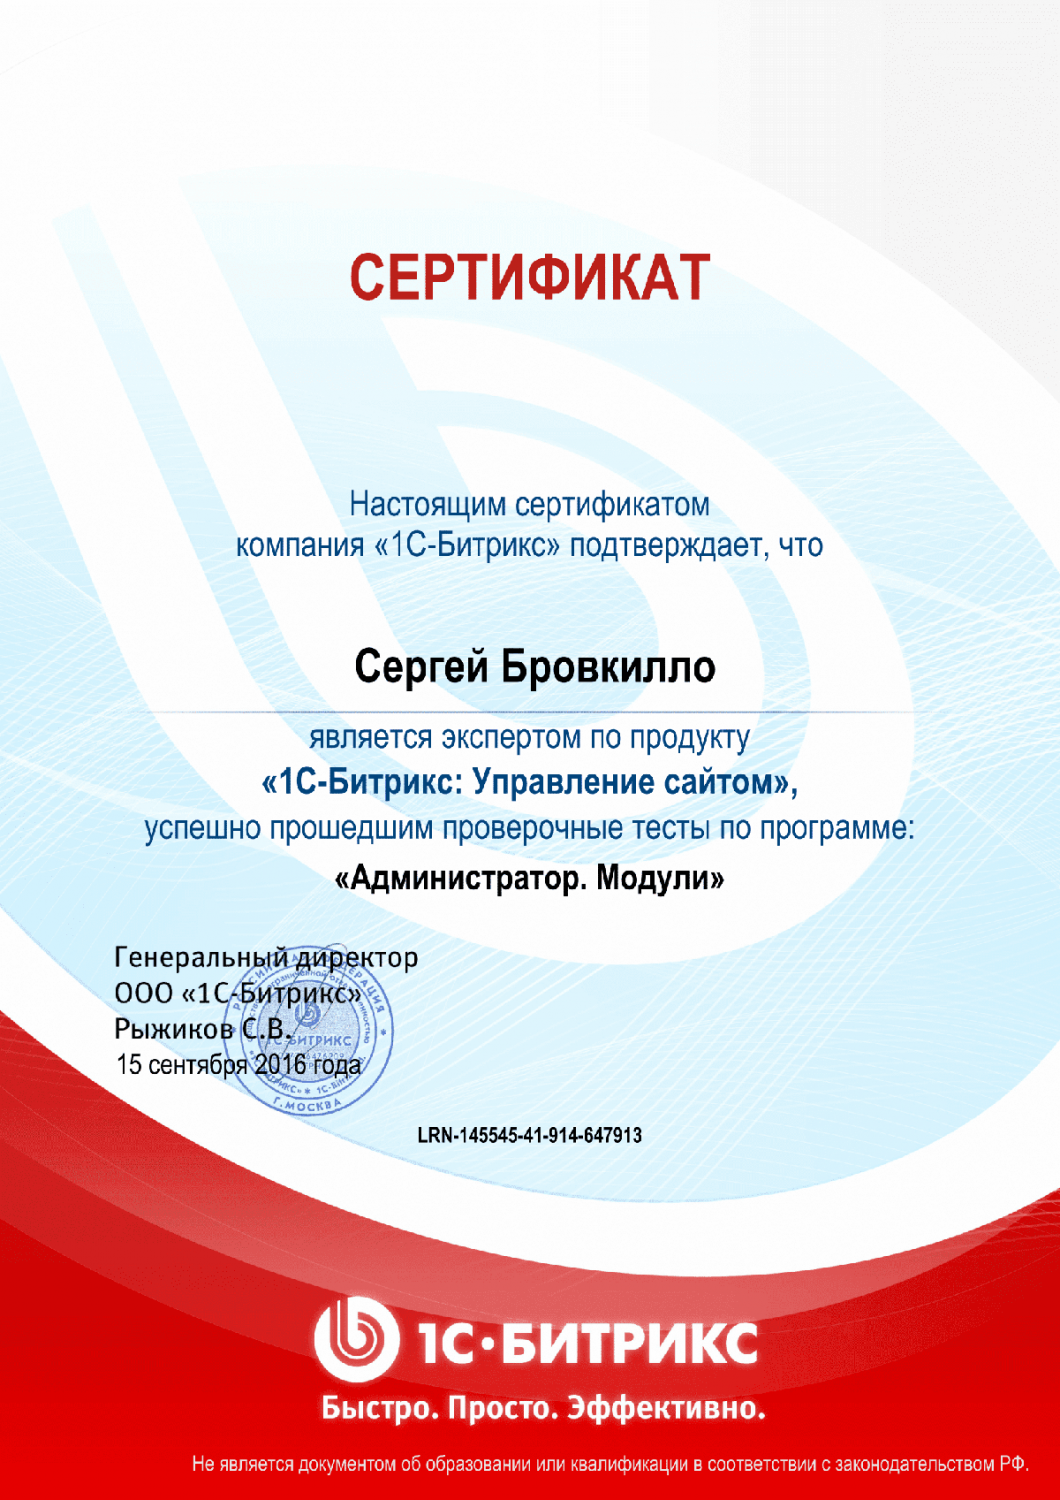 Сертификат эксперта по программе "Администратор. Модули" в Оренбурга